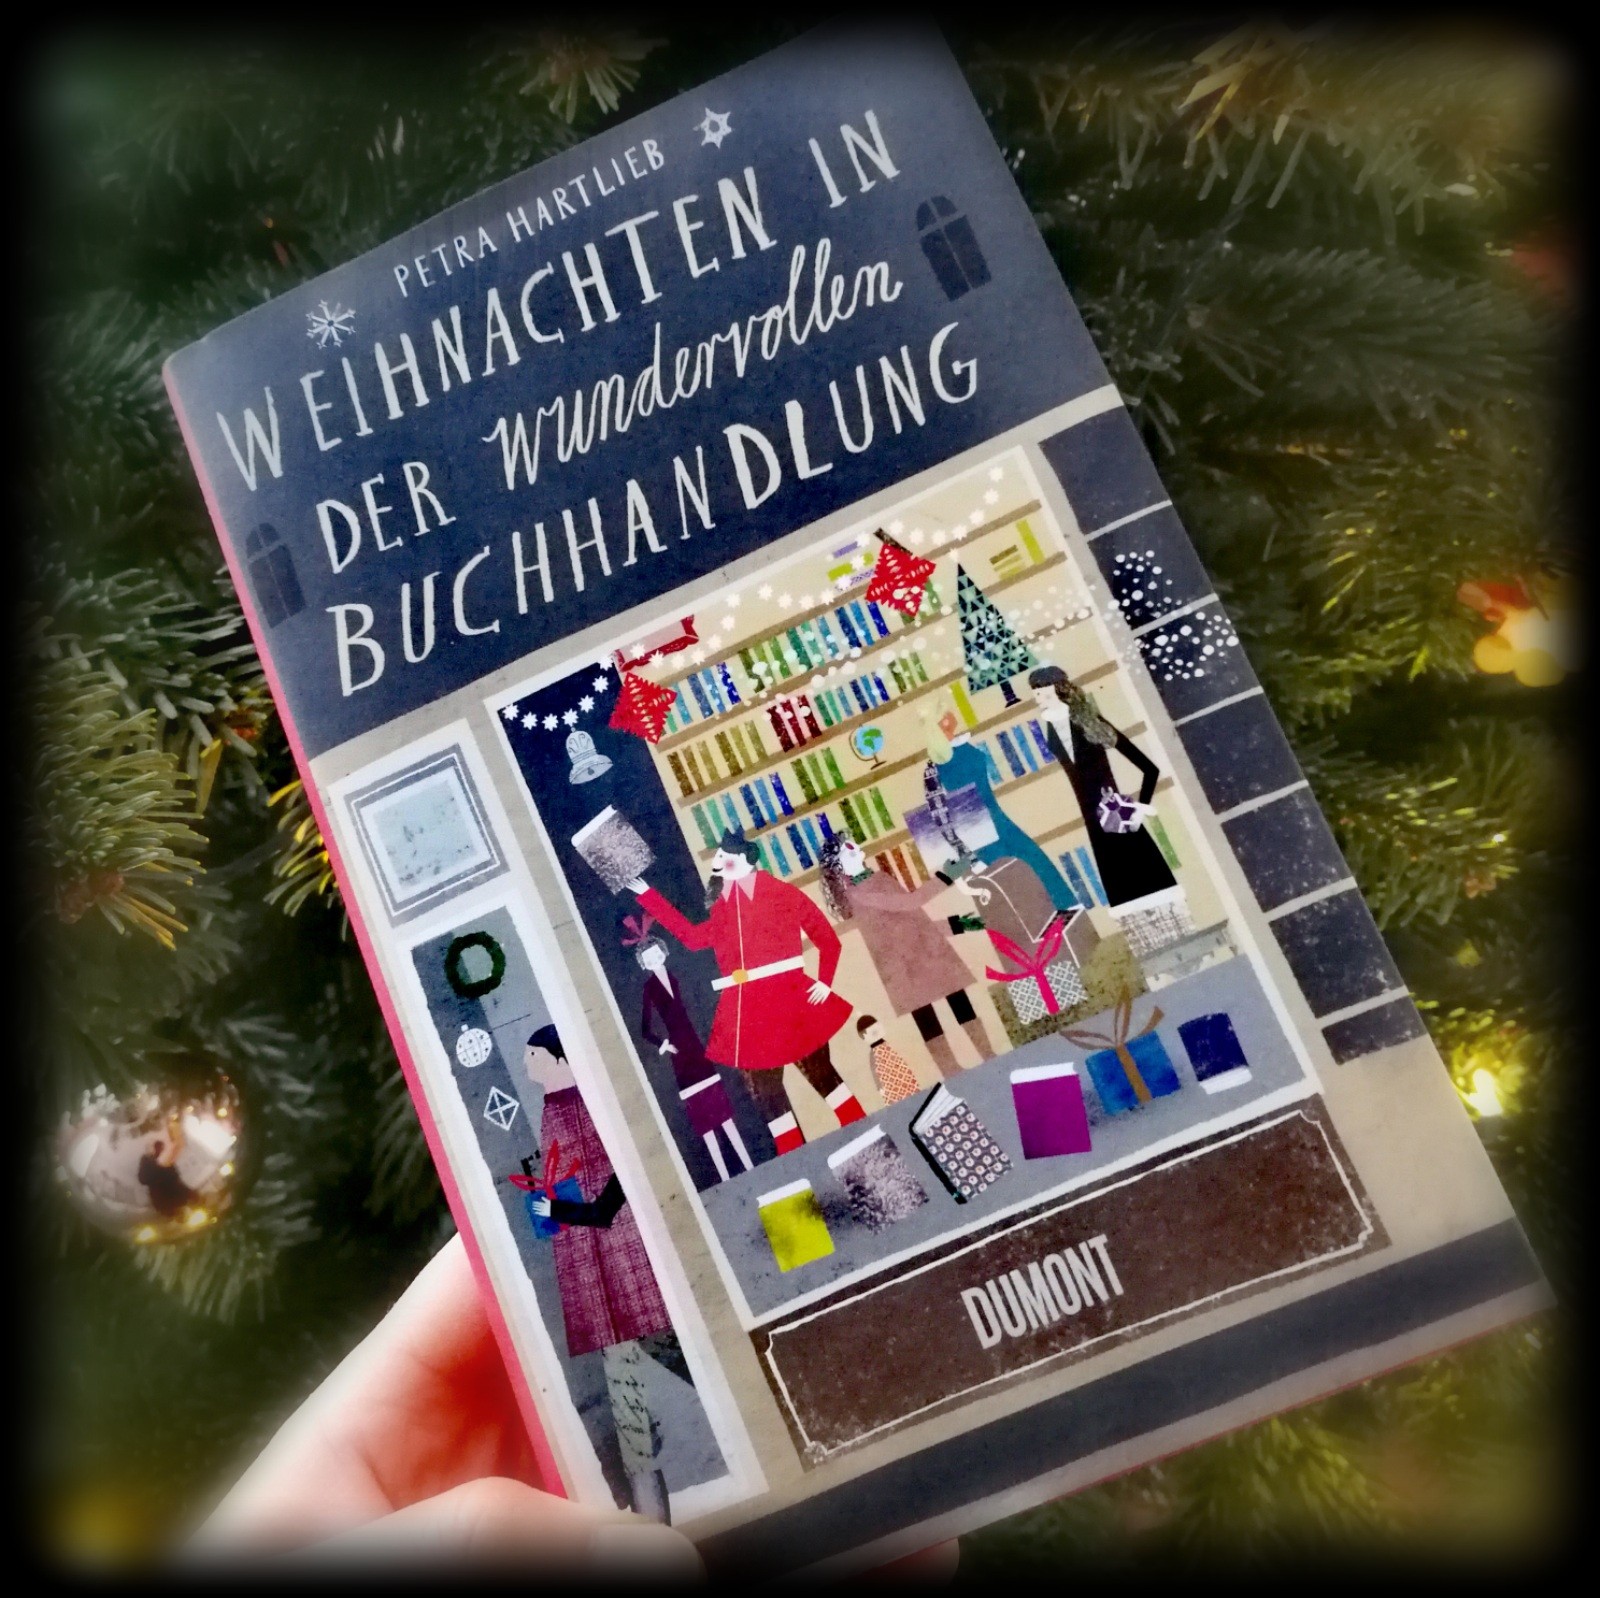 „Weihnachten in der wundervollen Buchhandlung“ von Petra Hartlieb - So Anti-Weihnachten, dass man schon wieder in Stimmung kommt, geht das?!